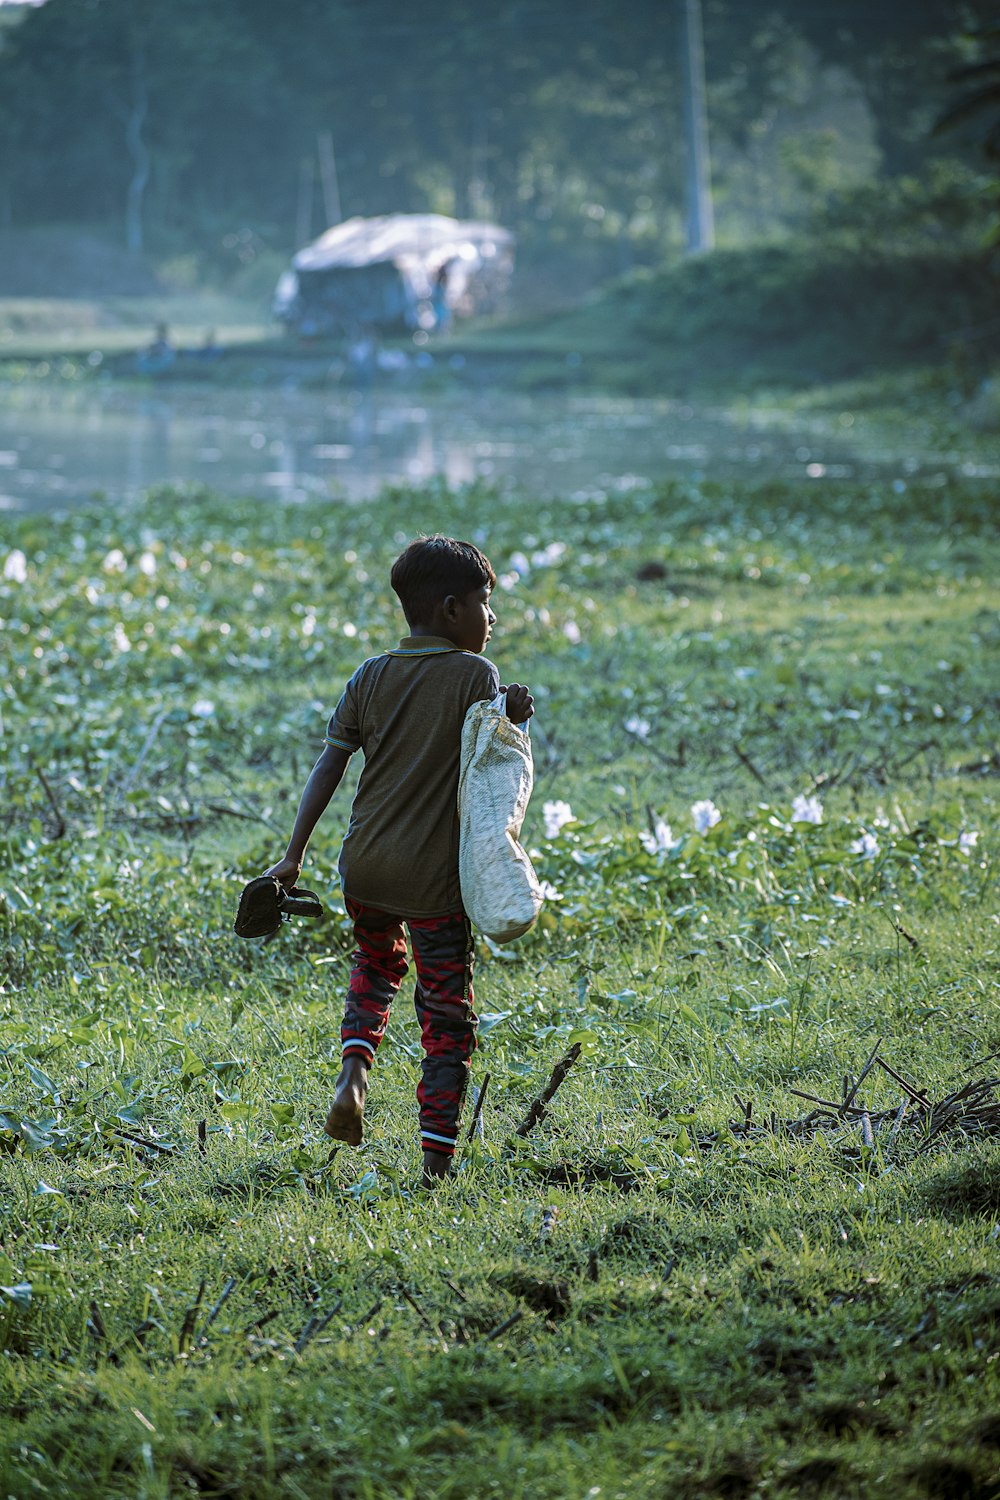 a young boy walking across a lush green field